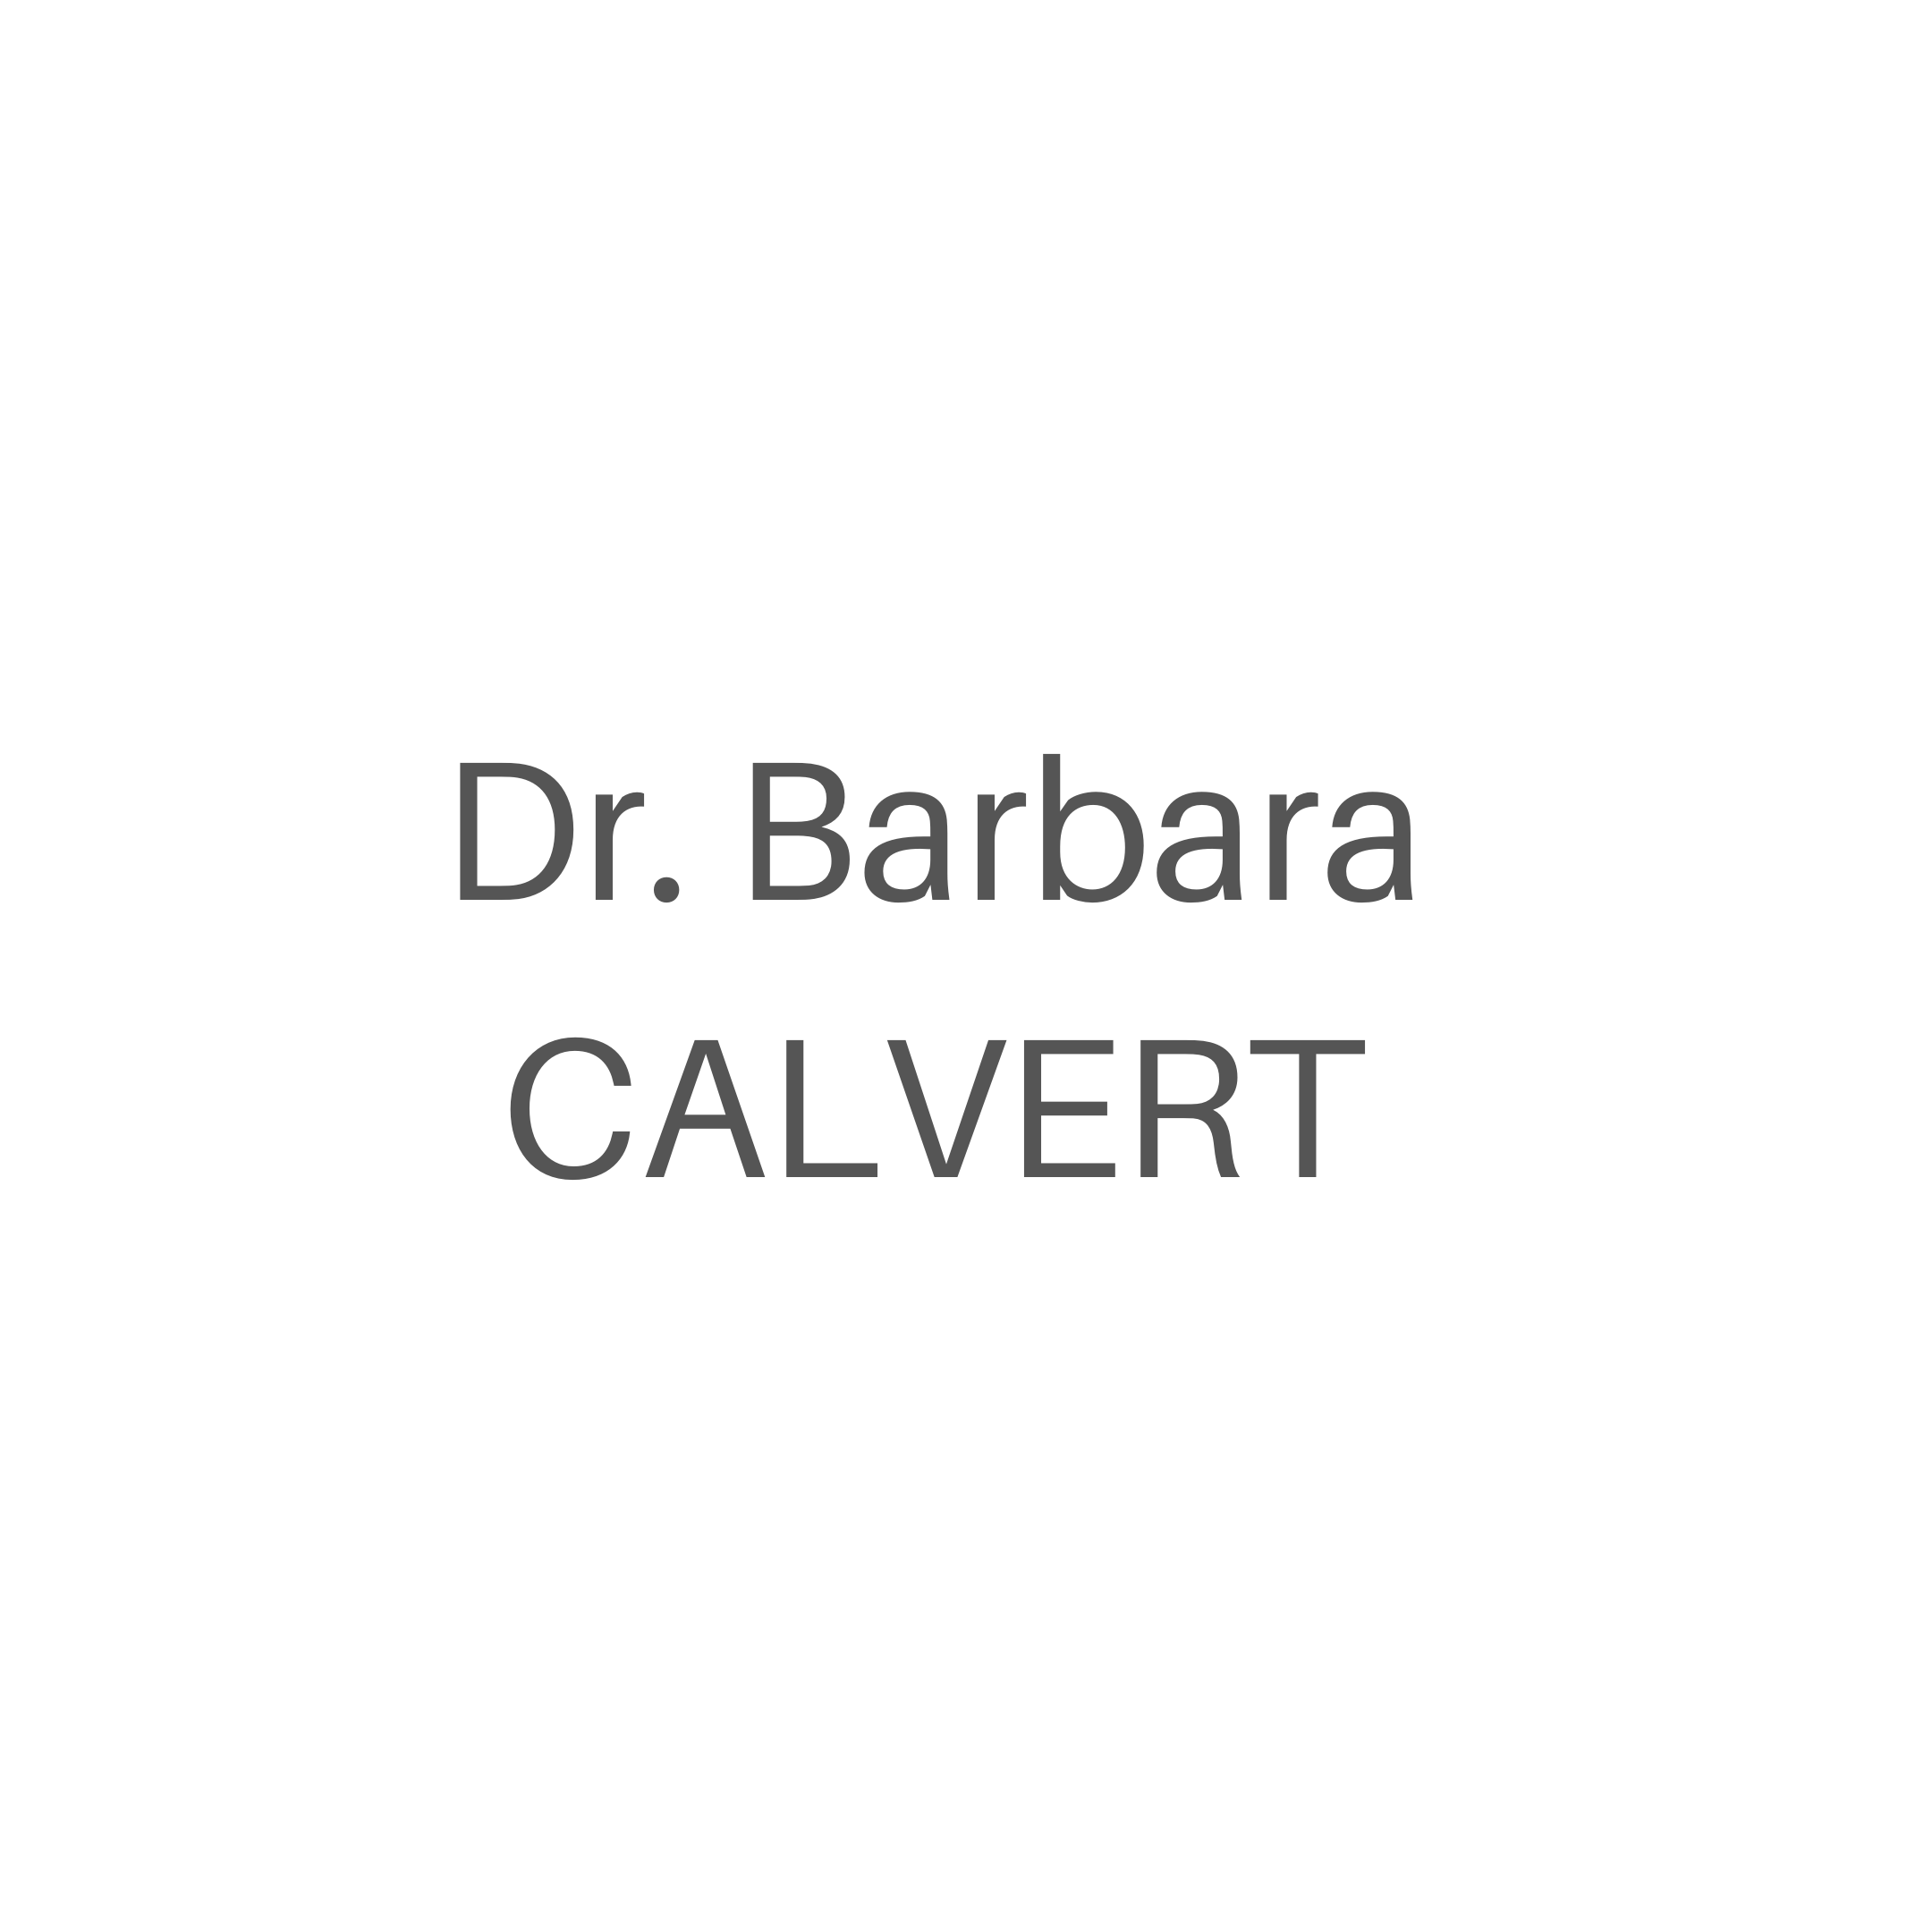 Dr. Barbara Calvert